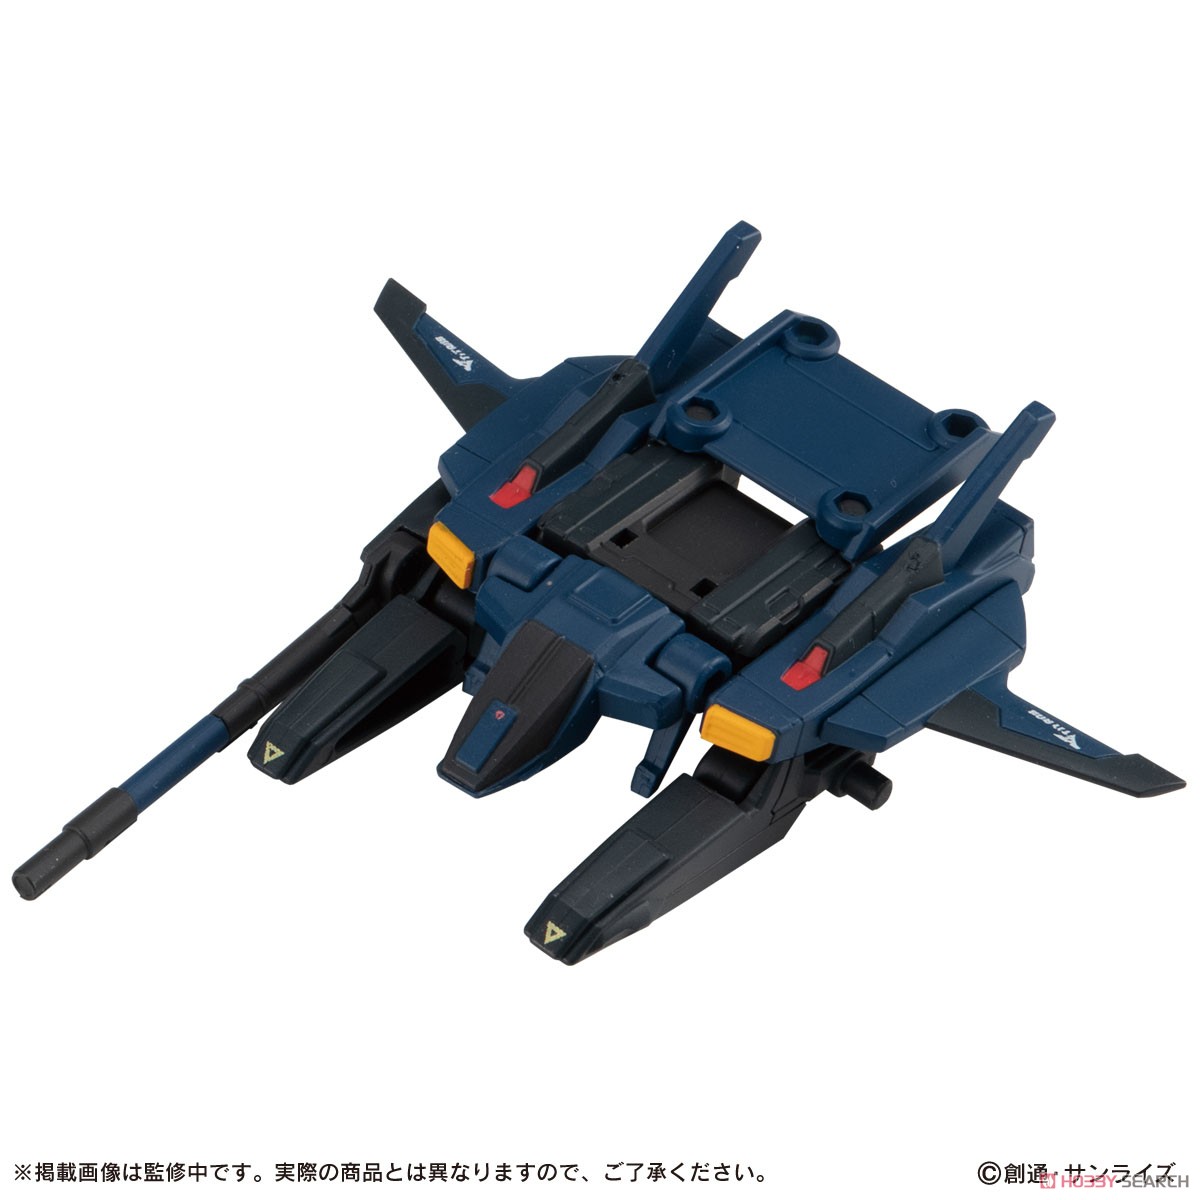 機動戦士ガンダム『MOBILE SUIT ENSEMBLE7.5』デフォルメ可動フィギュア 10個入りBOX-005